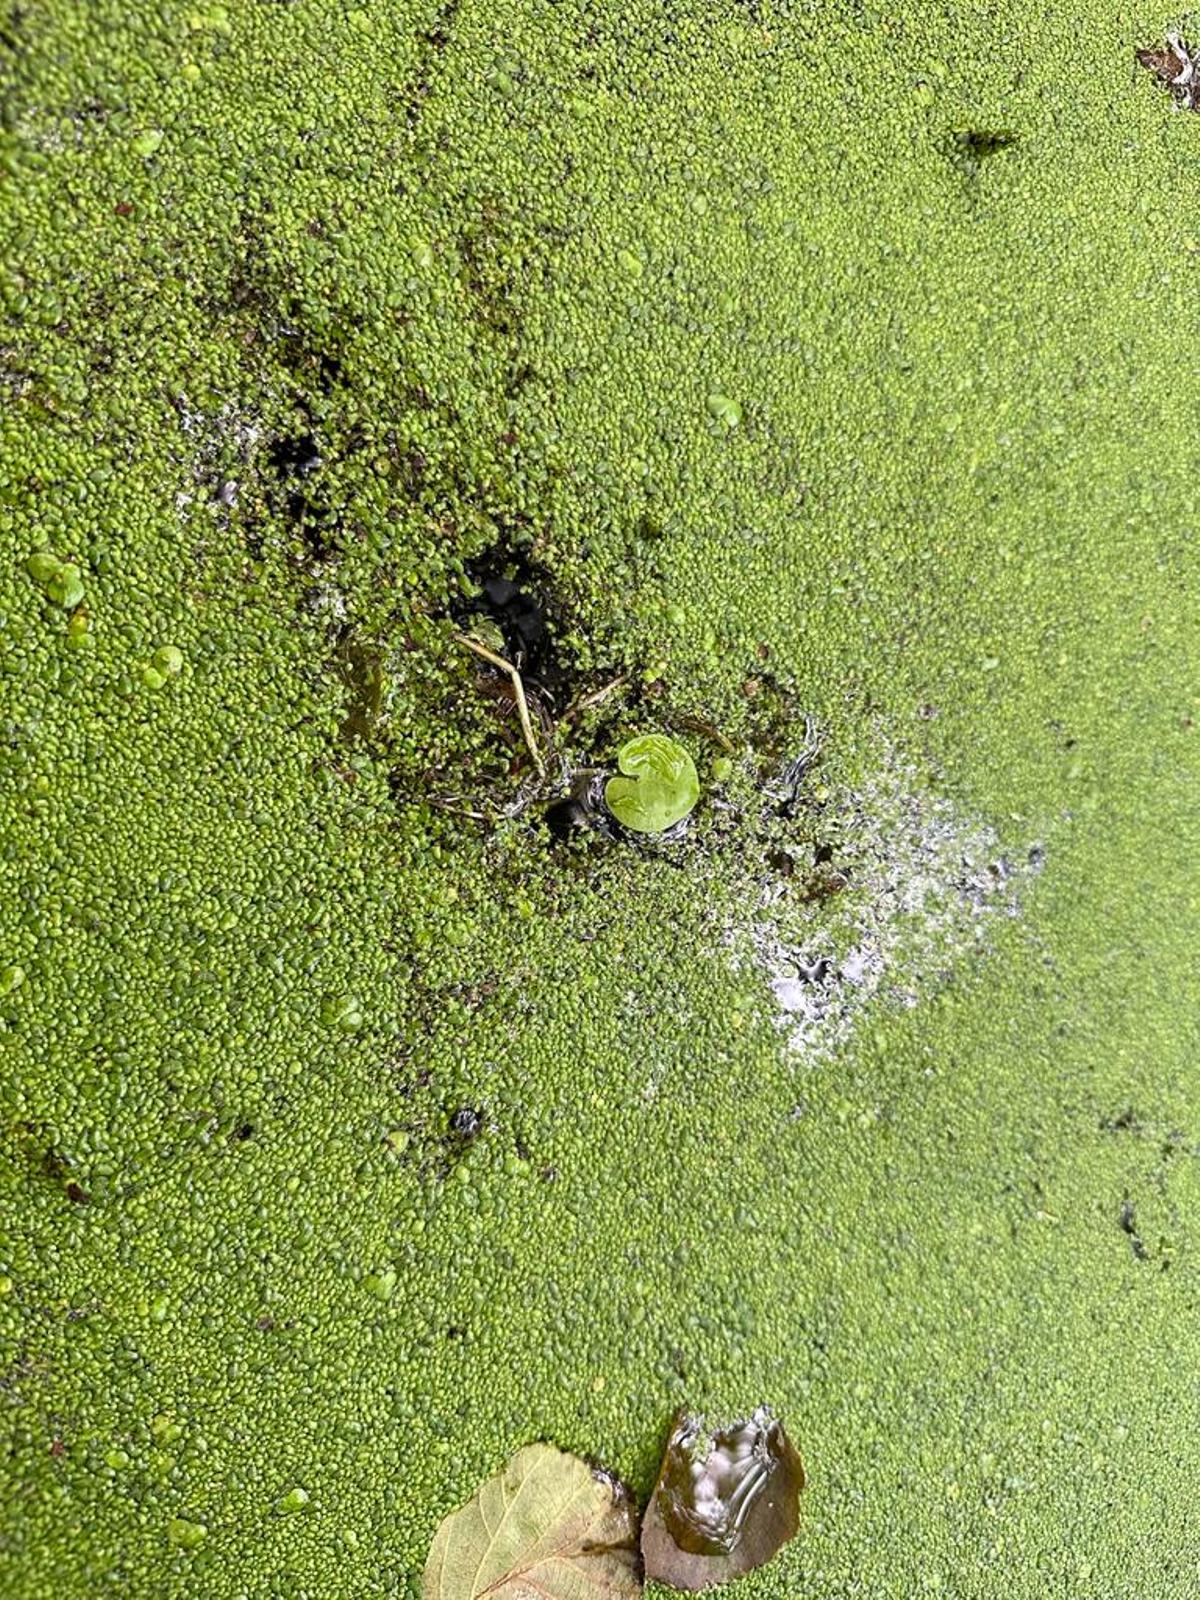 Ejemplar de bocado de rana en la laguna de As Brañas de Sada.